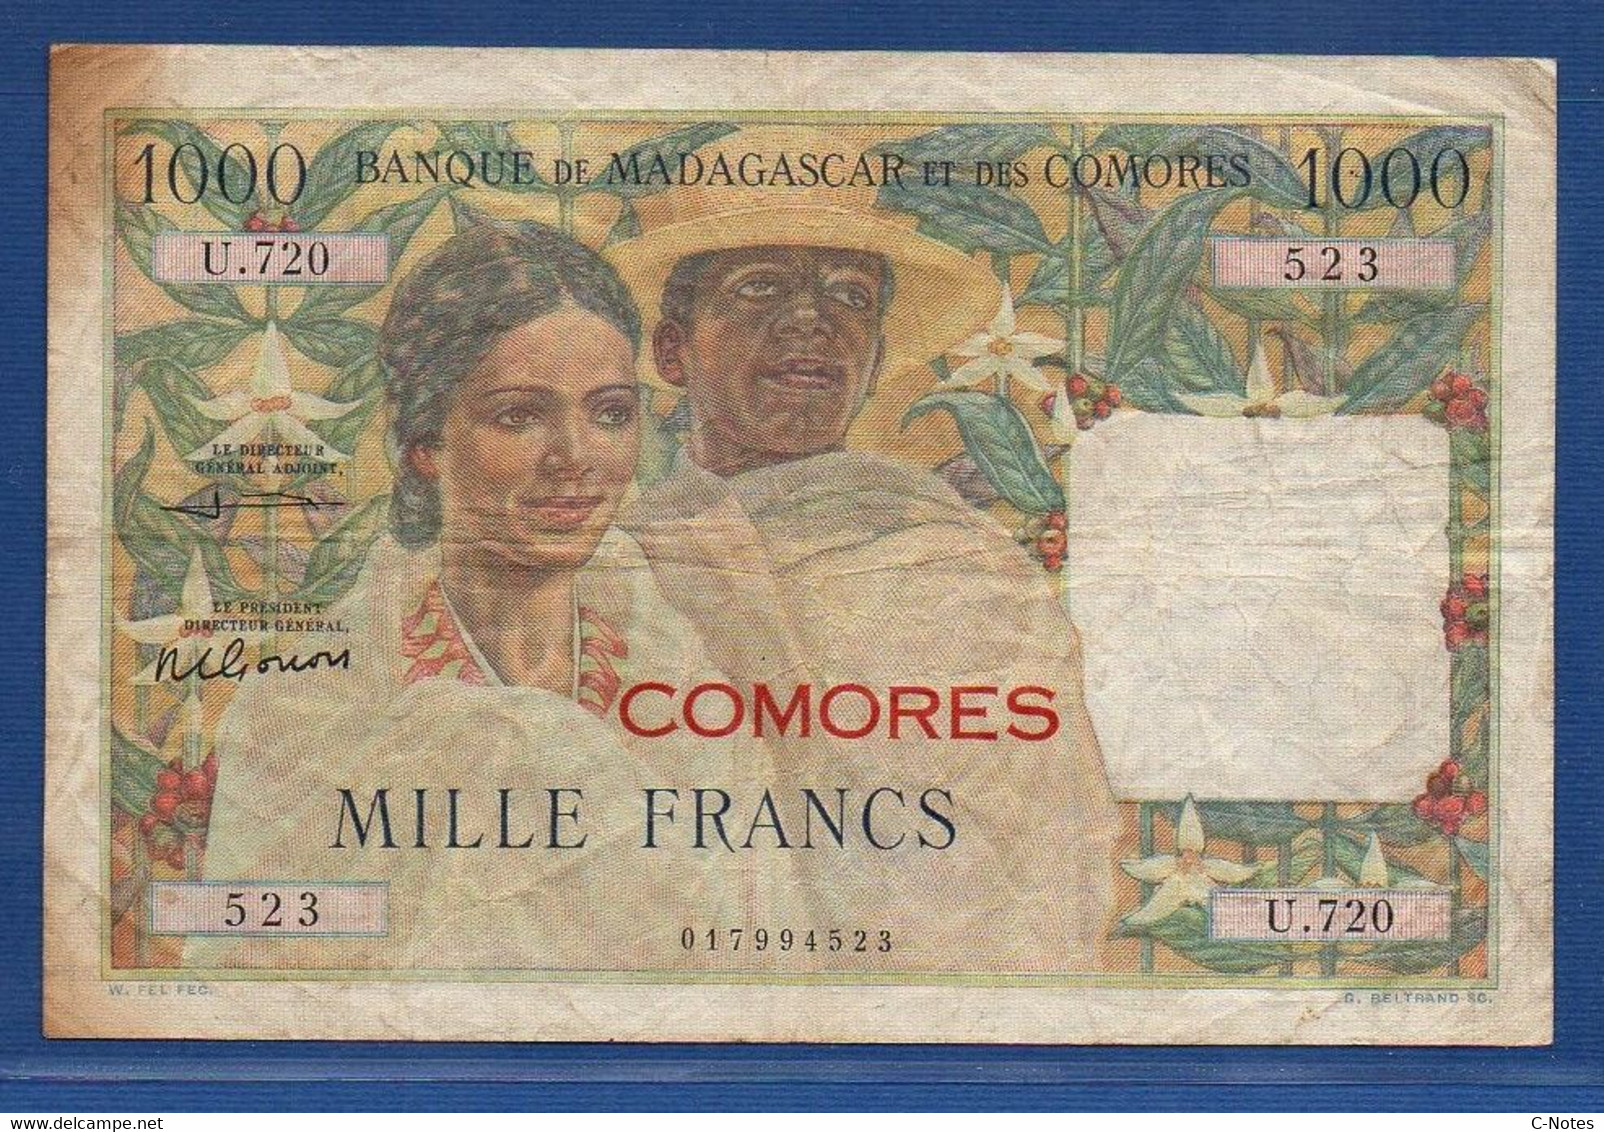 COMOROS - P. 5b2 – 1000 Francs 1963 Circulated / F+, Serie U.720 523 - Comoros